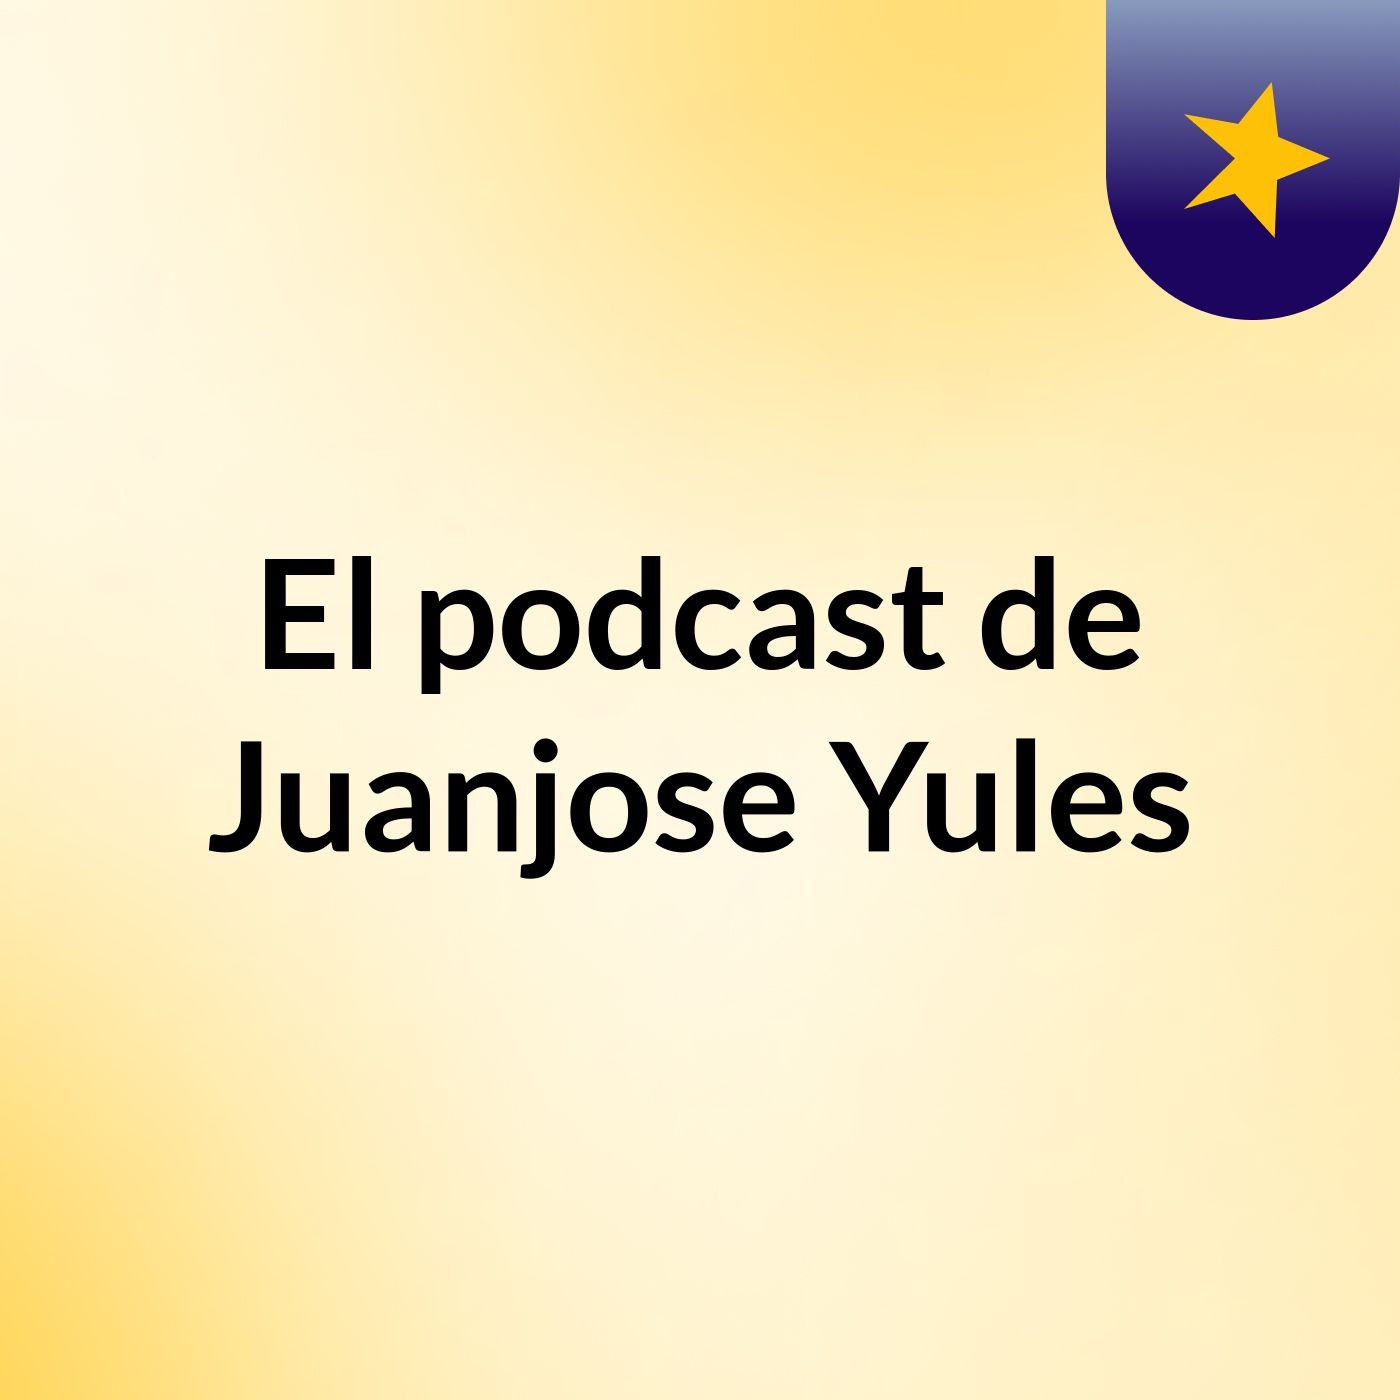 El podcast de Juanjose Yules